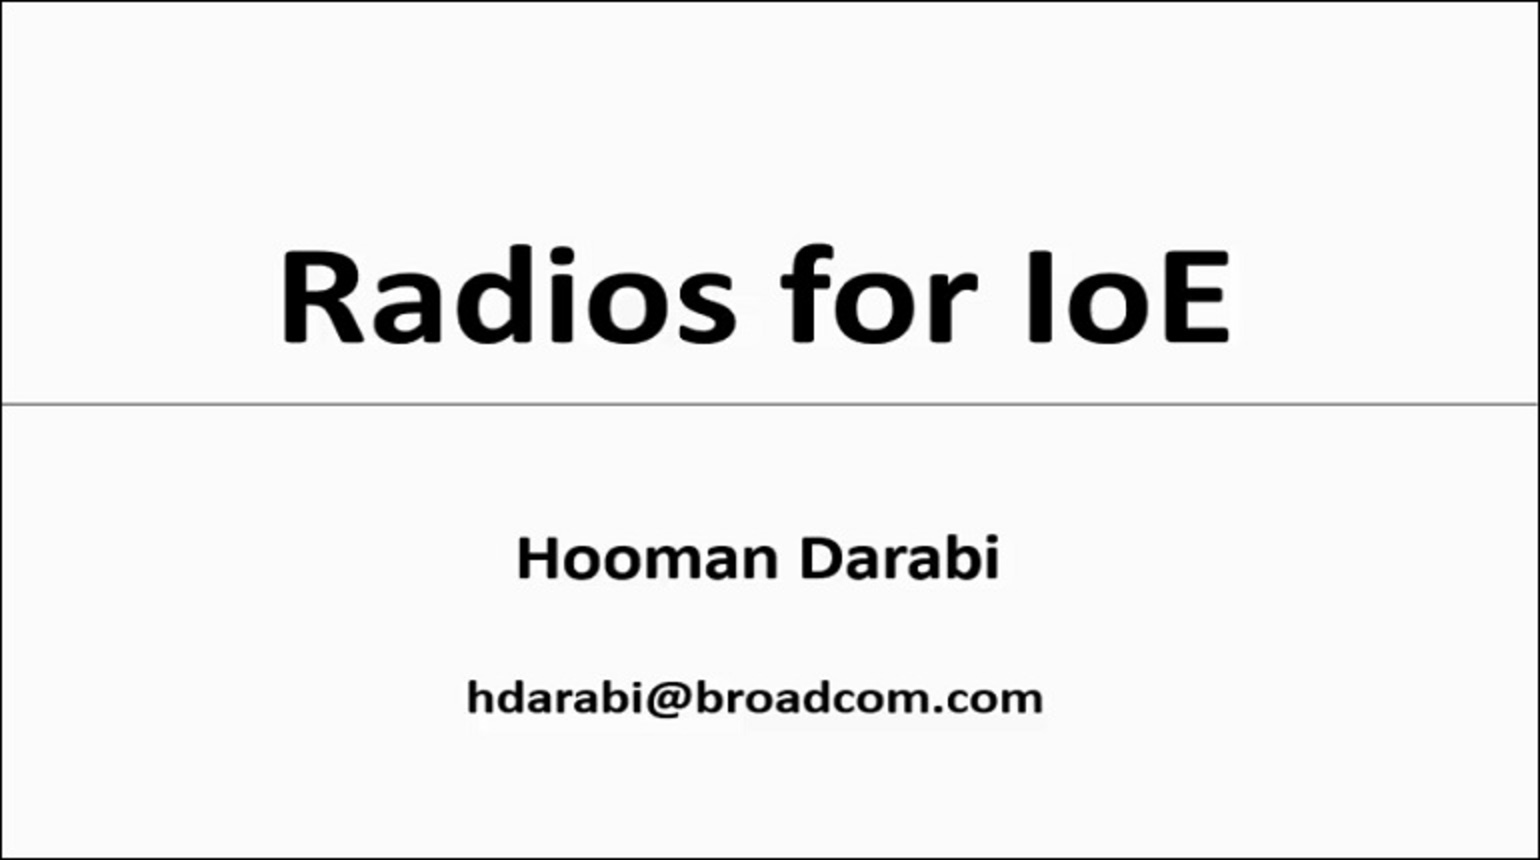 Radios for IoE Video